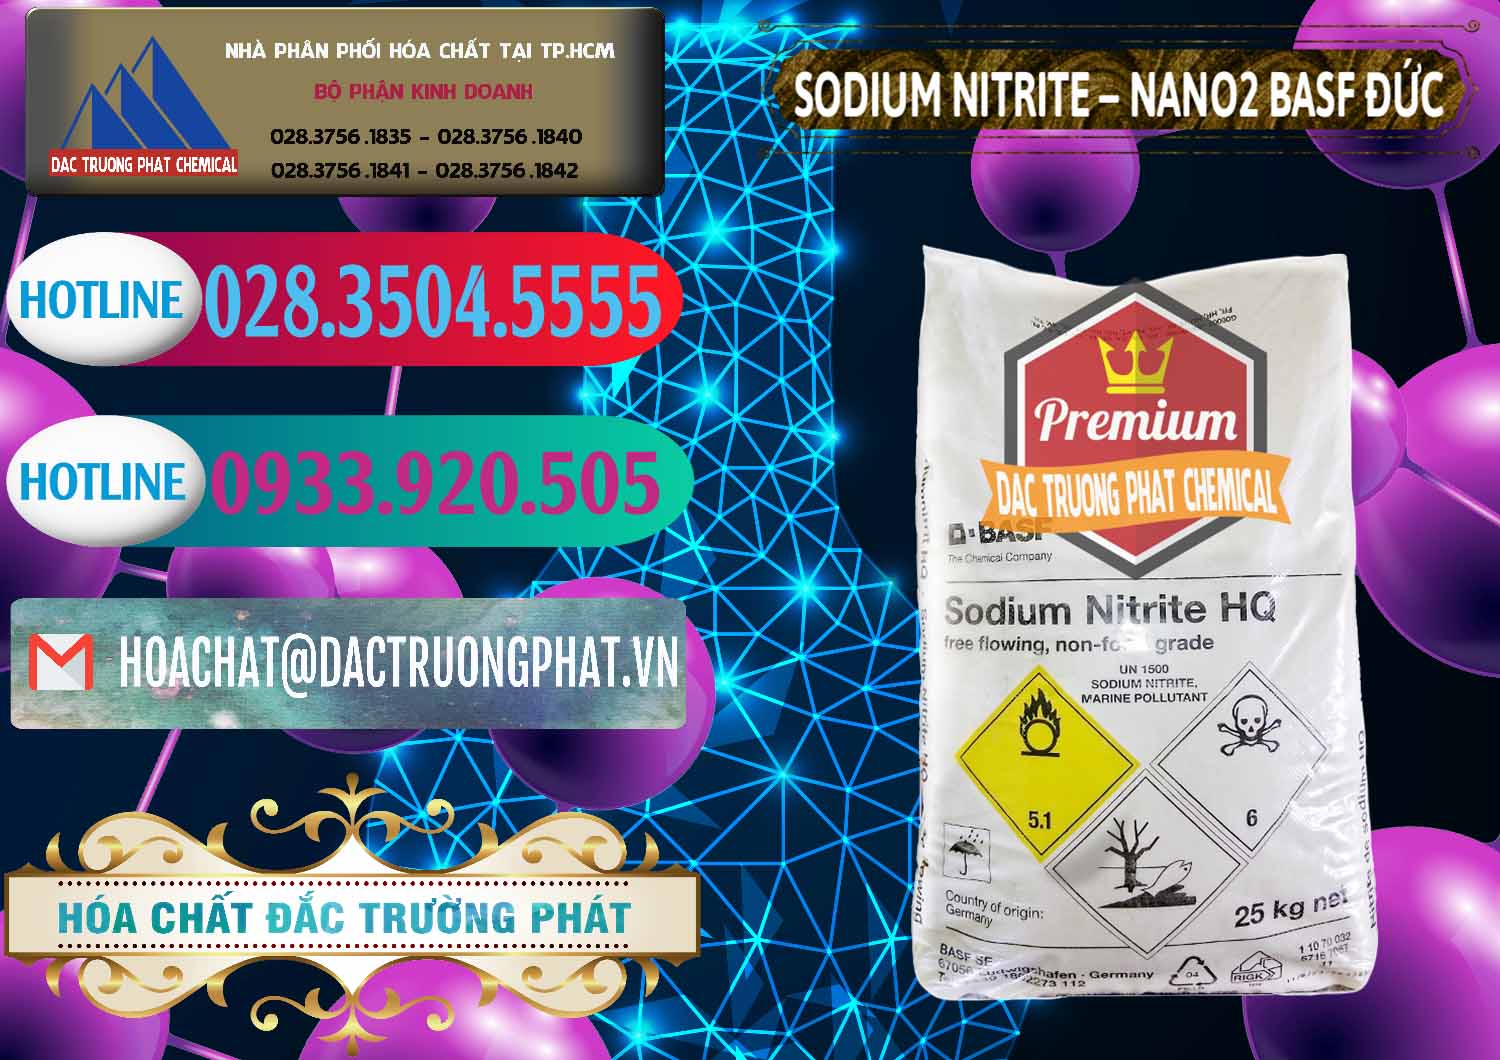 Cty chuyên bán _ cung ứng Sodium Nitrite - NANO2 Đức BASF Germany - 0148 - Nhà phân phối _ nhập khẩu hóa chất tại TP.HCM - truongphat.vn